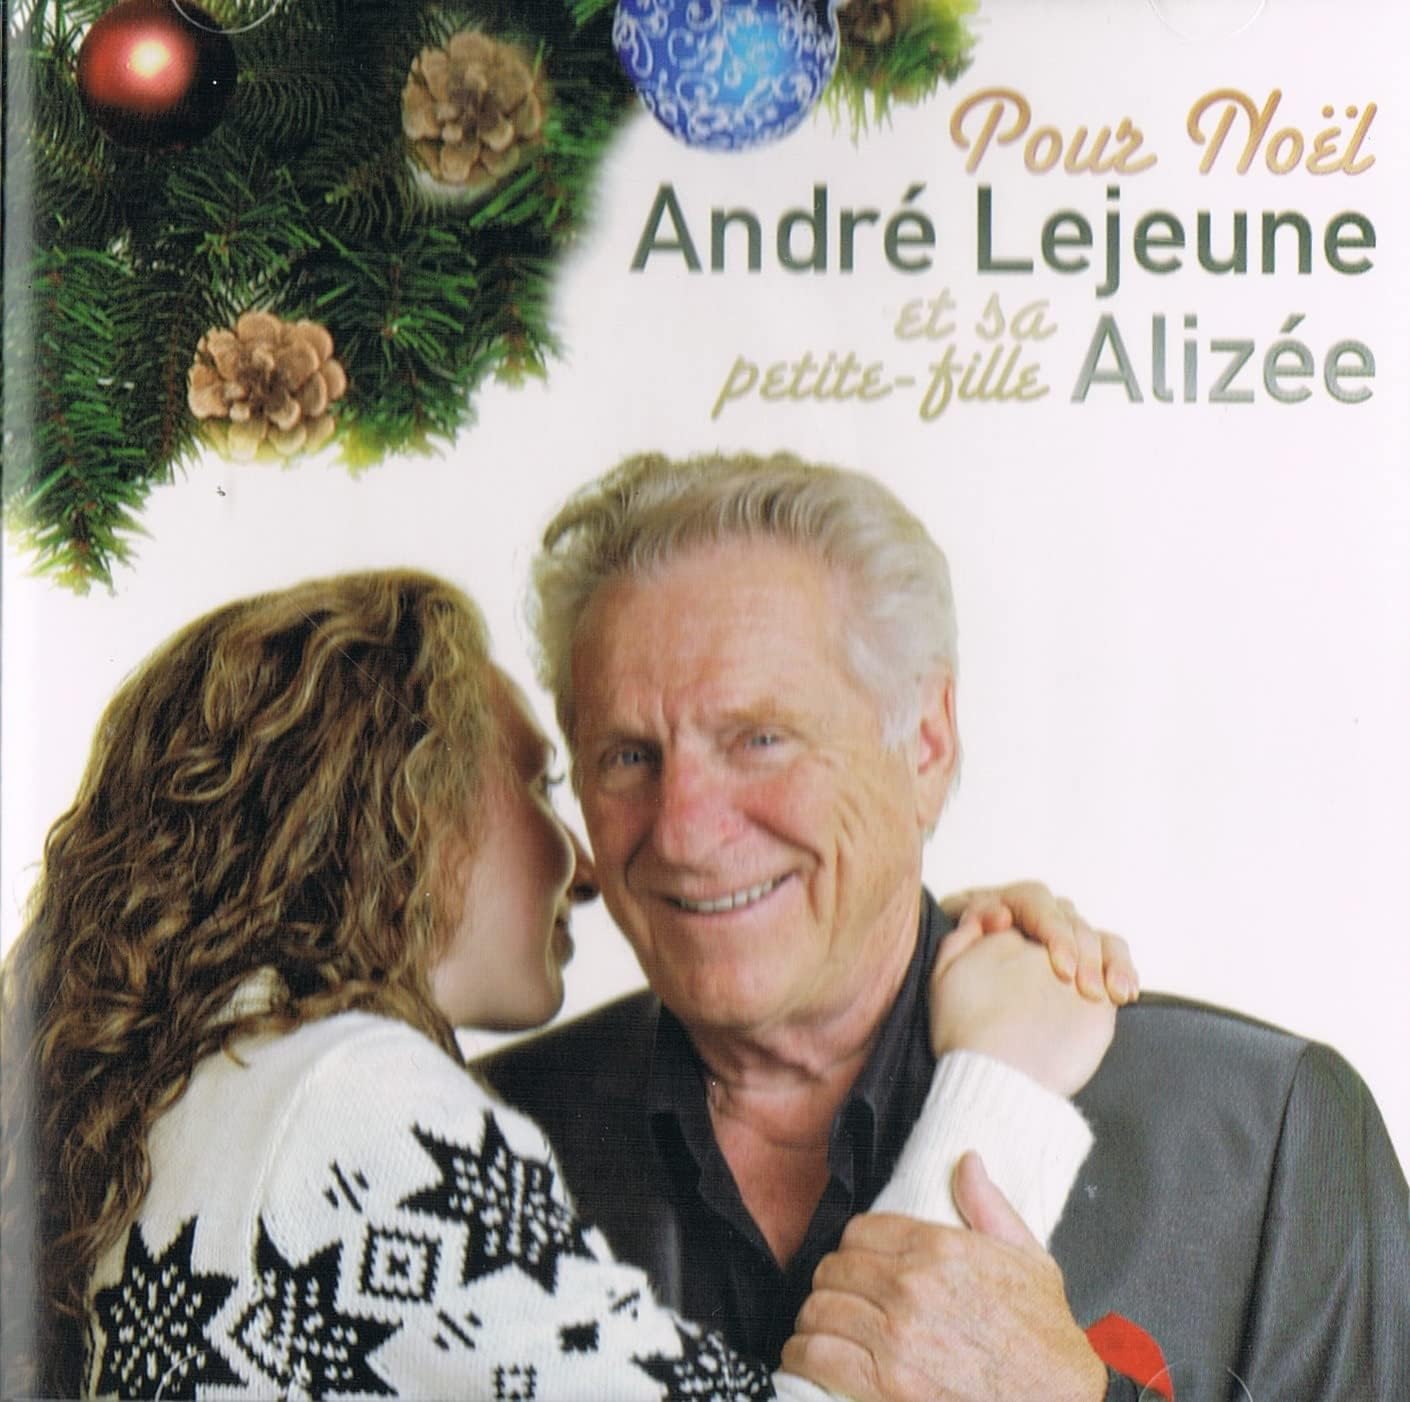 Andre Lejeune et ses Invités Chantent Pour Noel & Le Jour de L'An (Noel & Folklore / Incluant 2 CD) [audioCD]